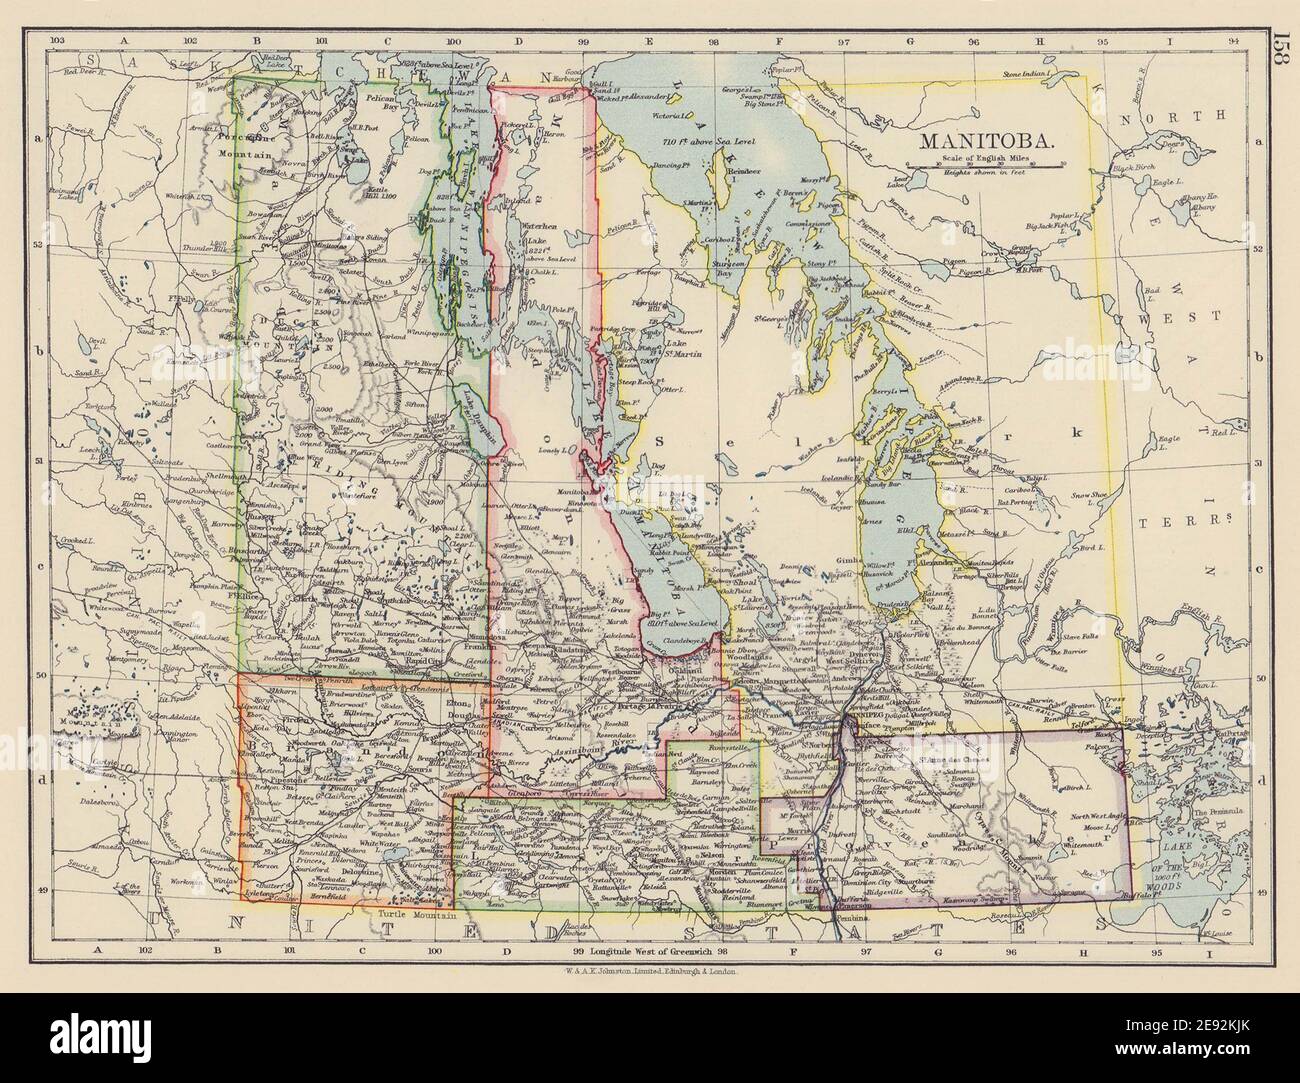 MANITOBA. Expansión anterior al norte. "provincia de sellos postales". Mapa de ferrocarriles 1901 Foto de stock